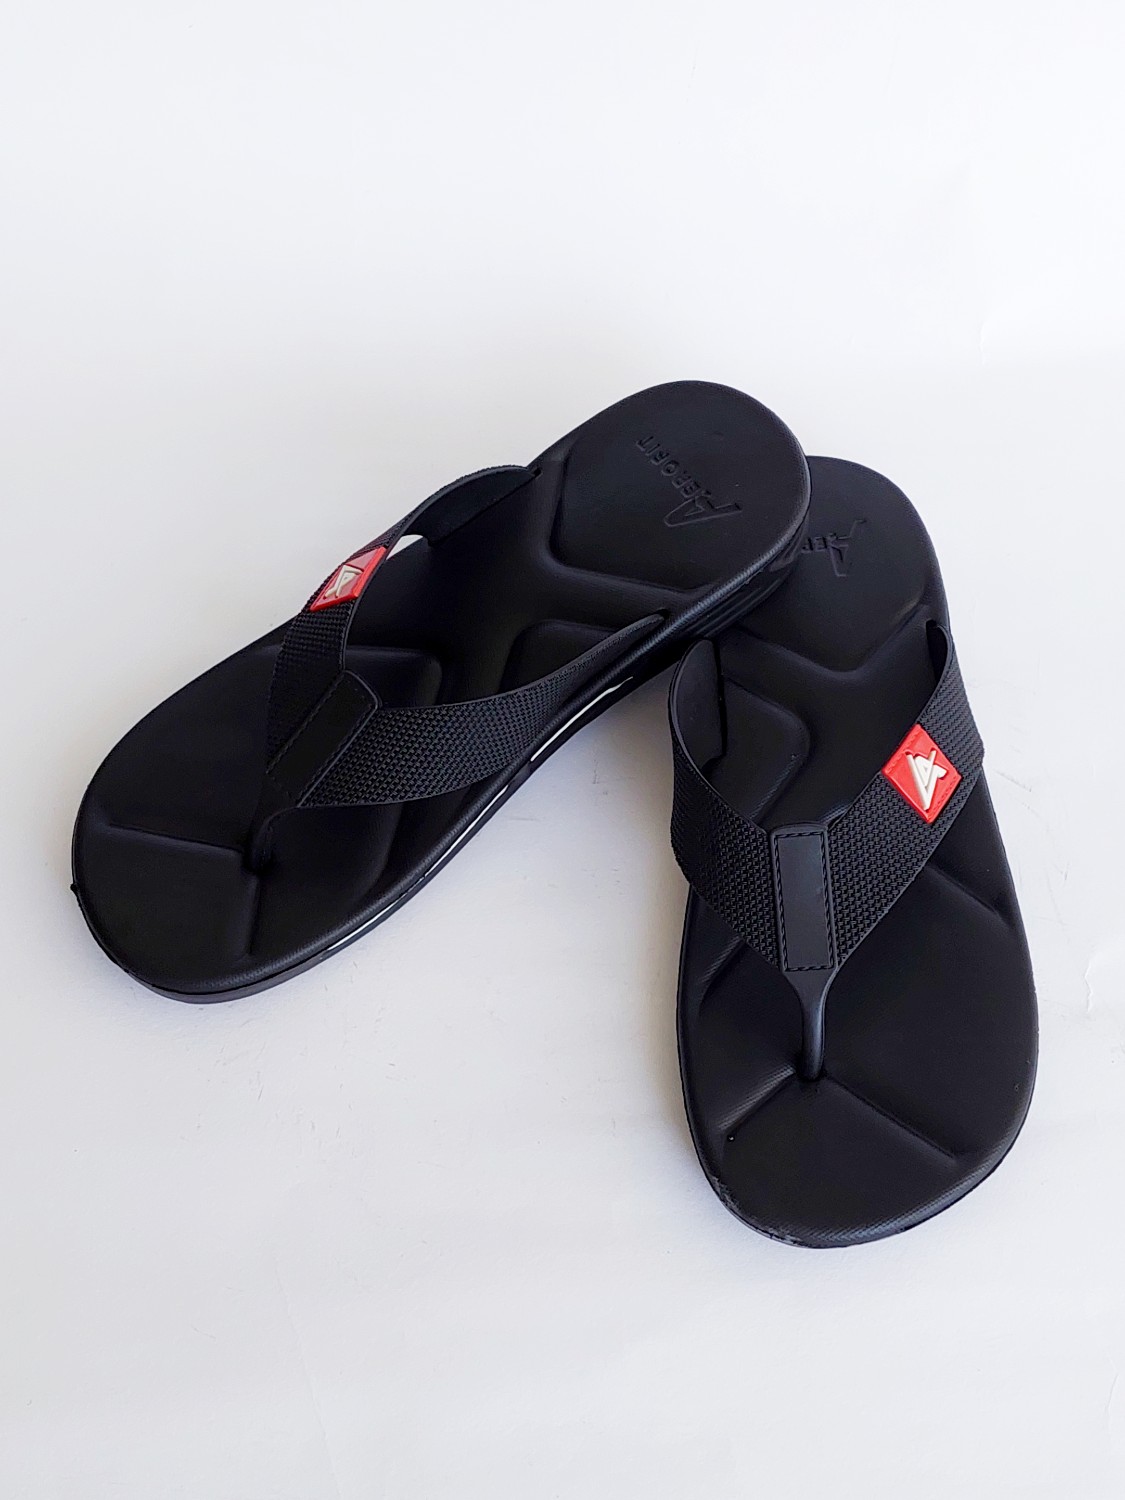 FAFT05-Modern Flip-Flop Slippers For Men - Frenzy